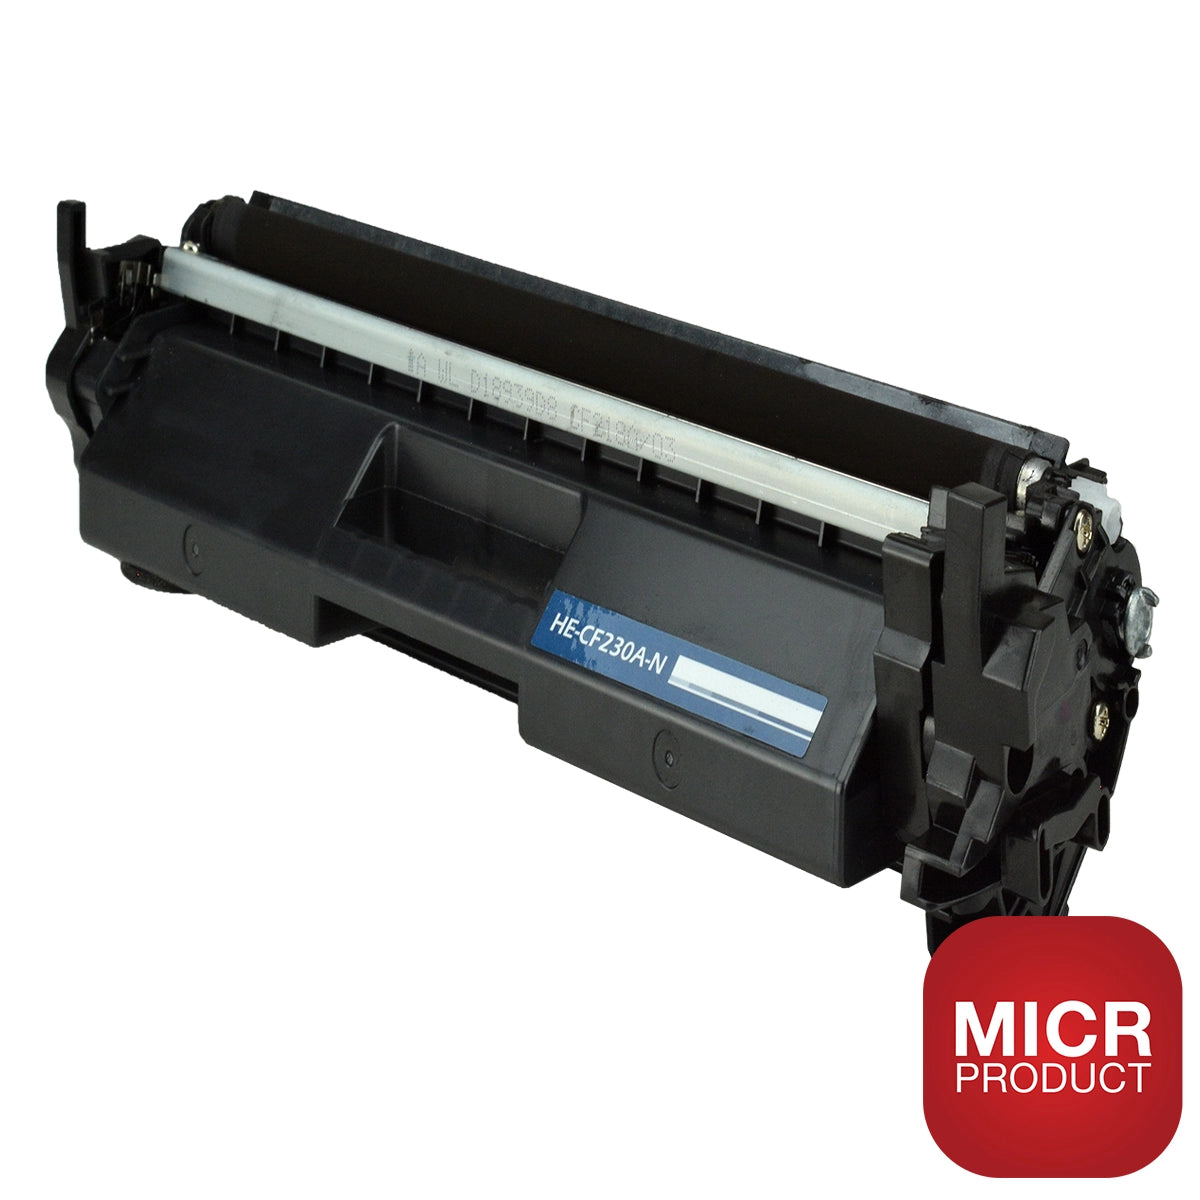 HP 30A MICR Toner Cartridge (CF230AM) Compatible